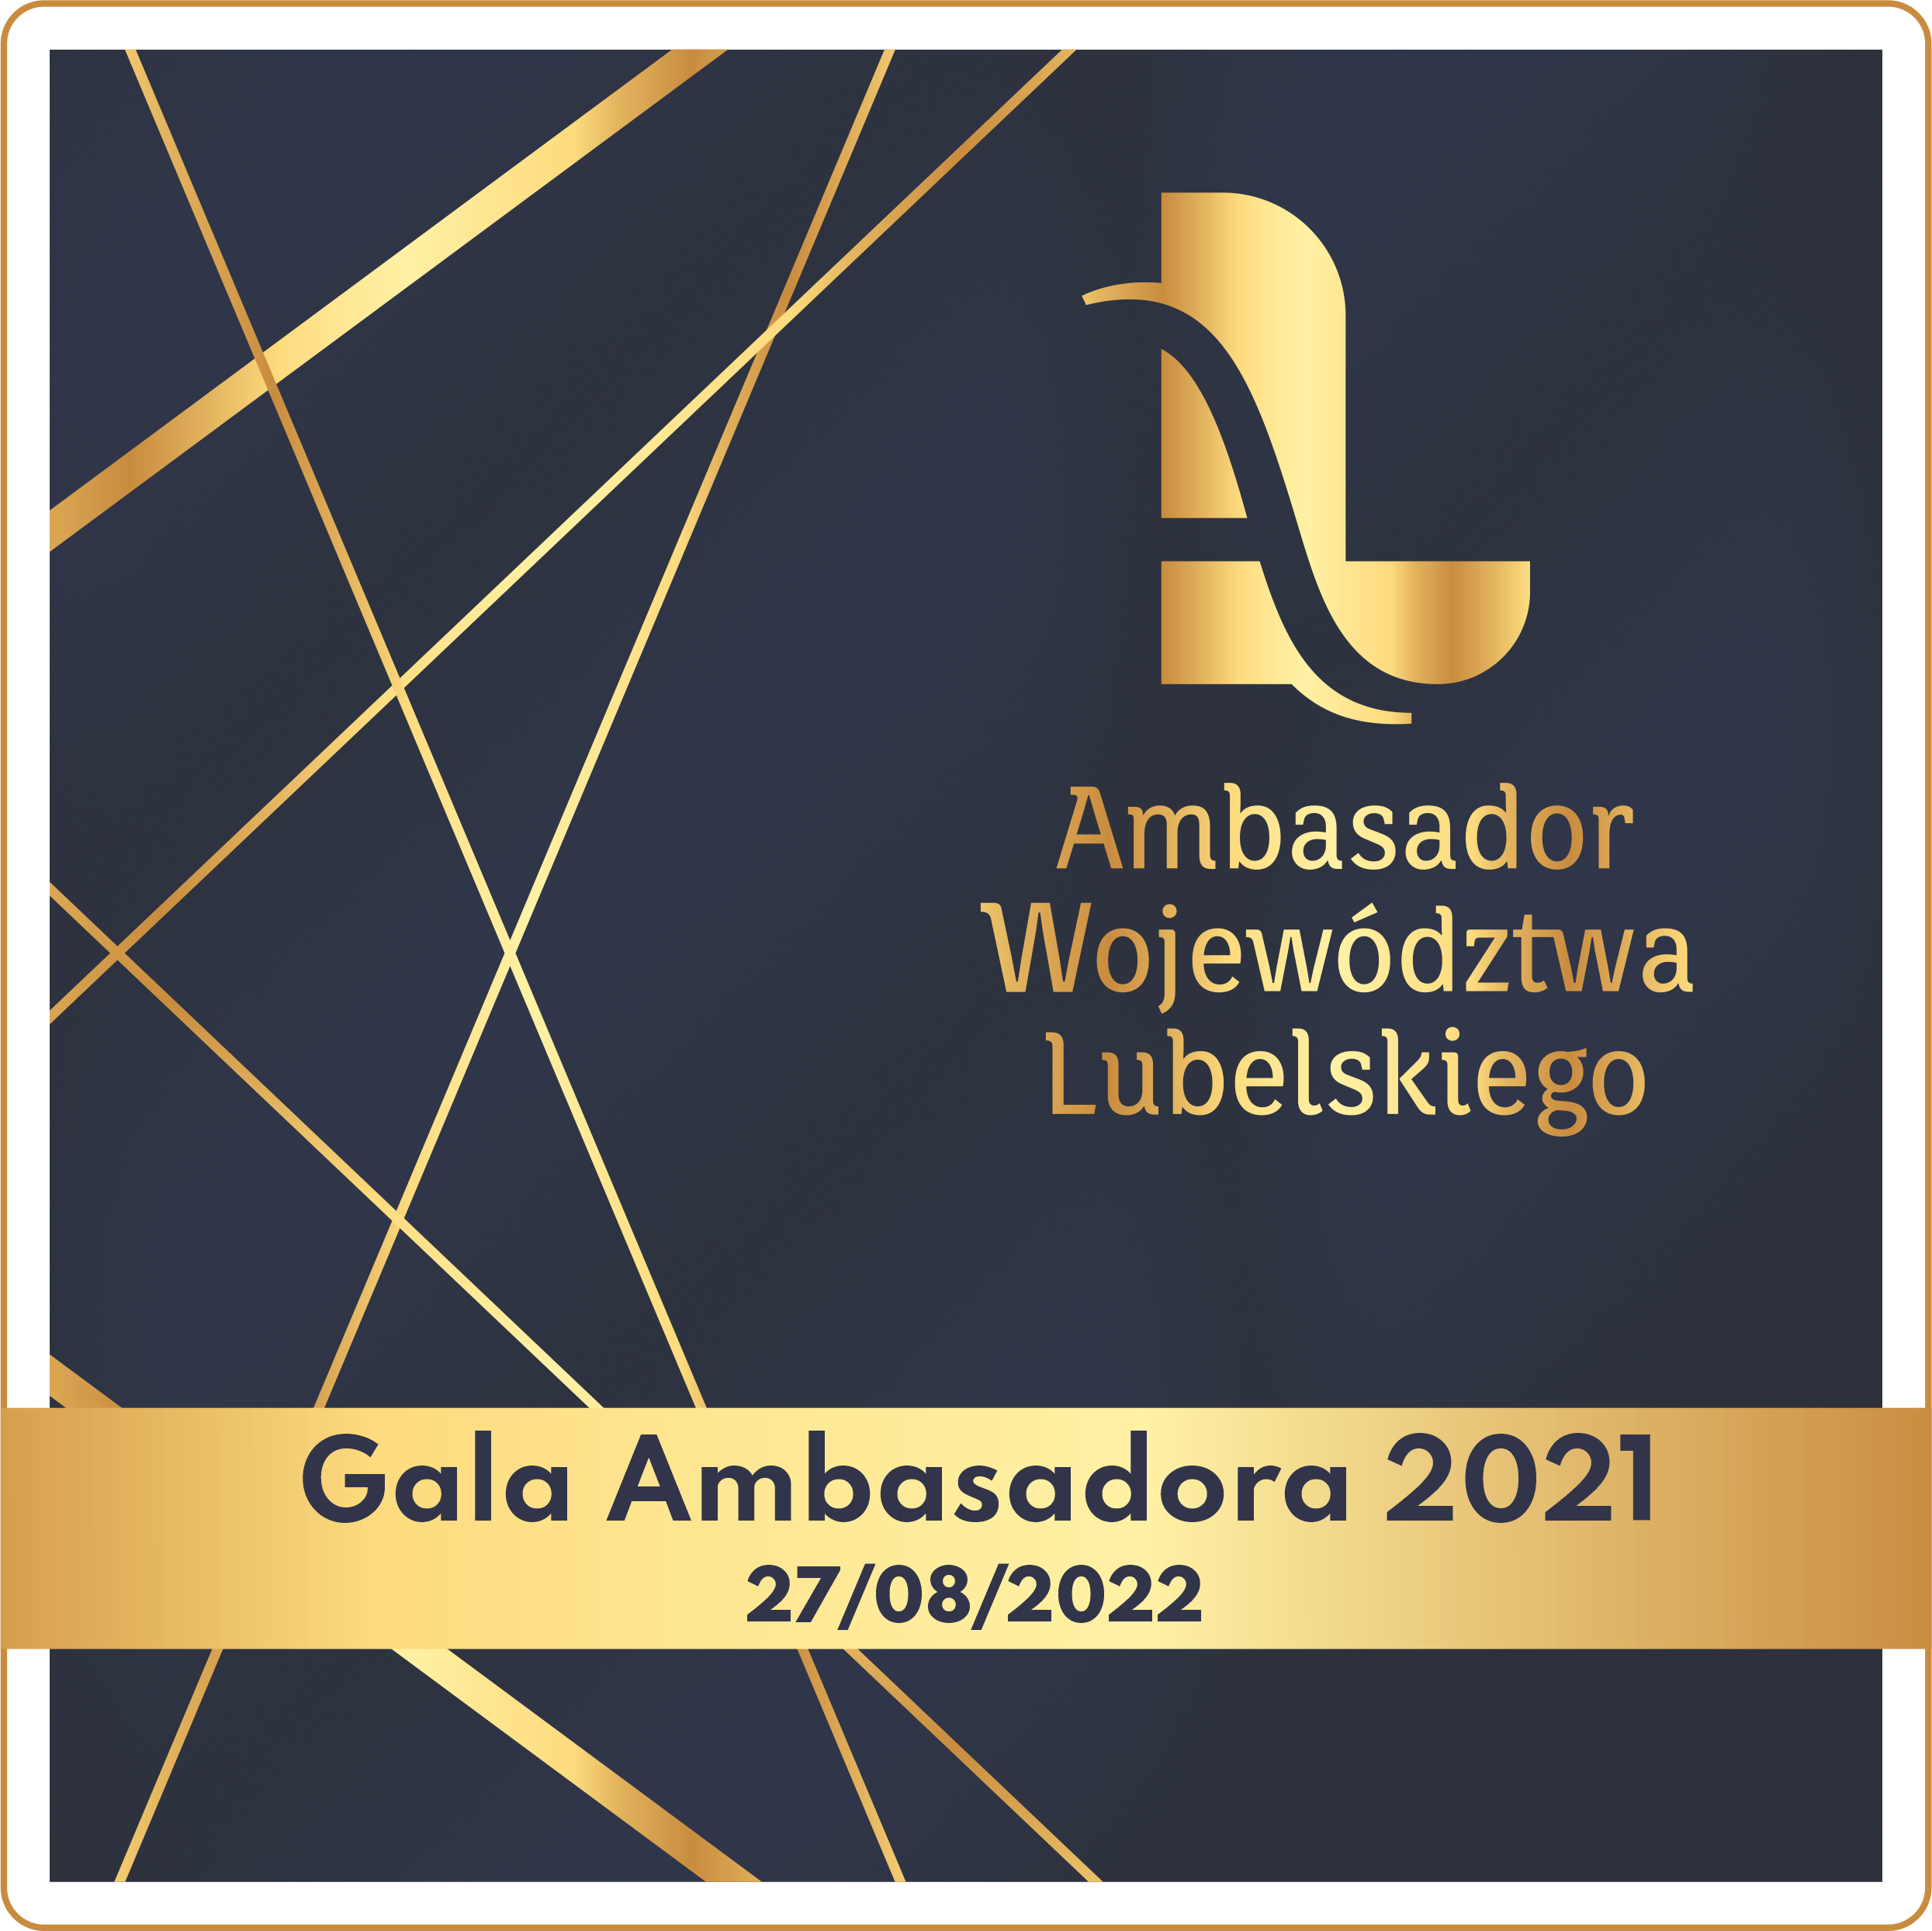 Przed nami gala Ambasadora Województwa Lubelskiego za 2021 rok